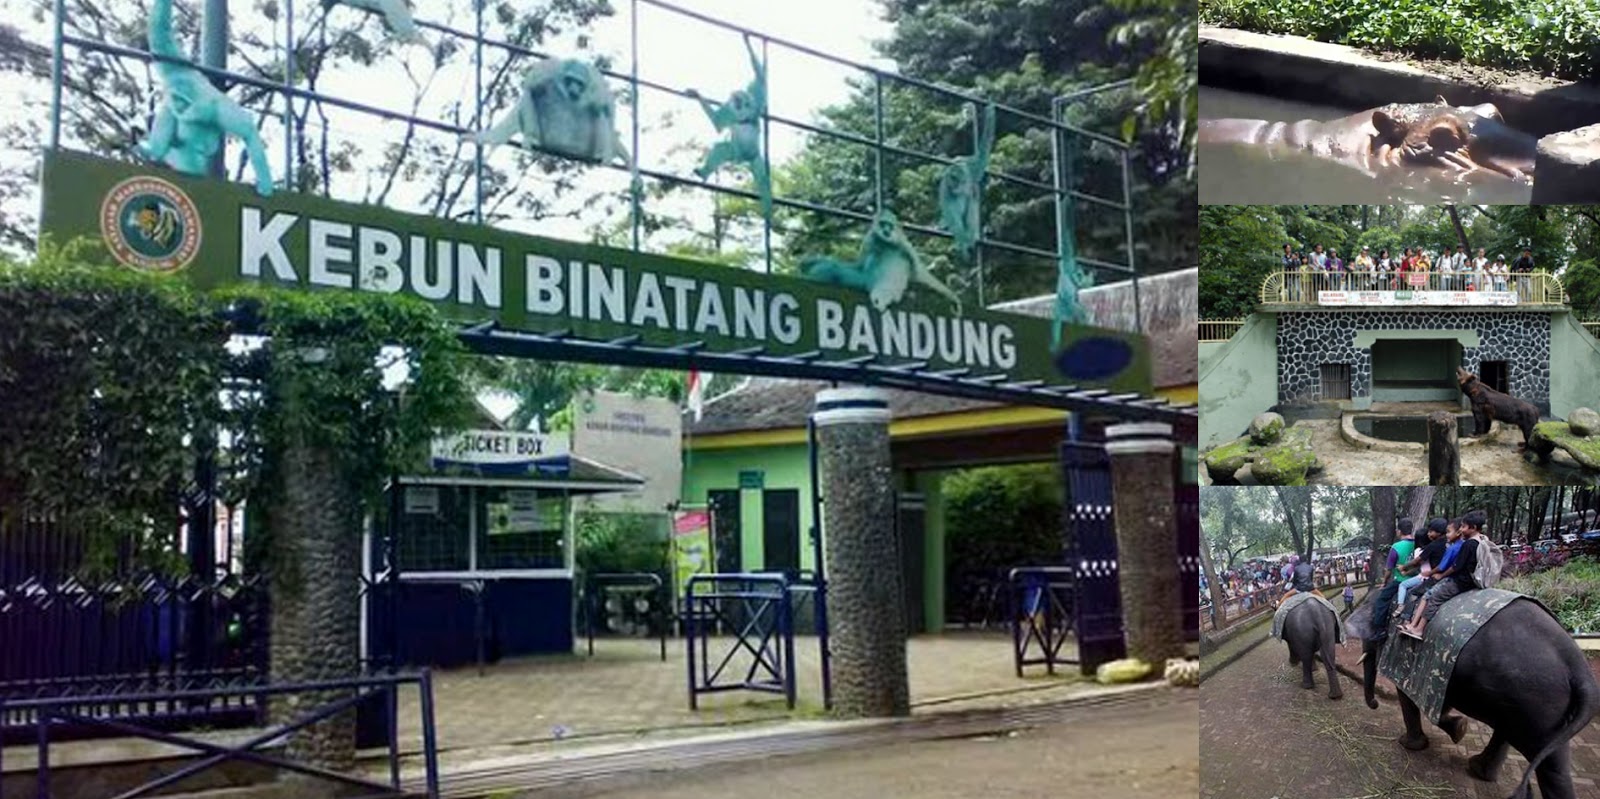 Kebun Binatang Bandung, Wisata Pendidikan dan Hiburan di